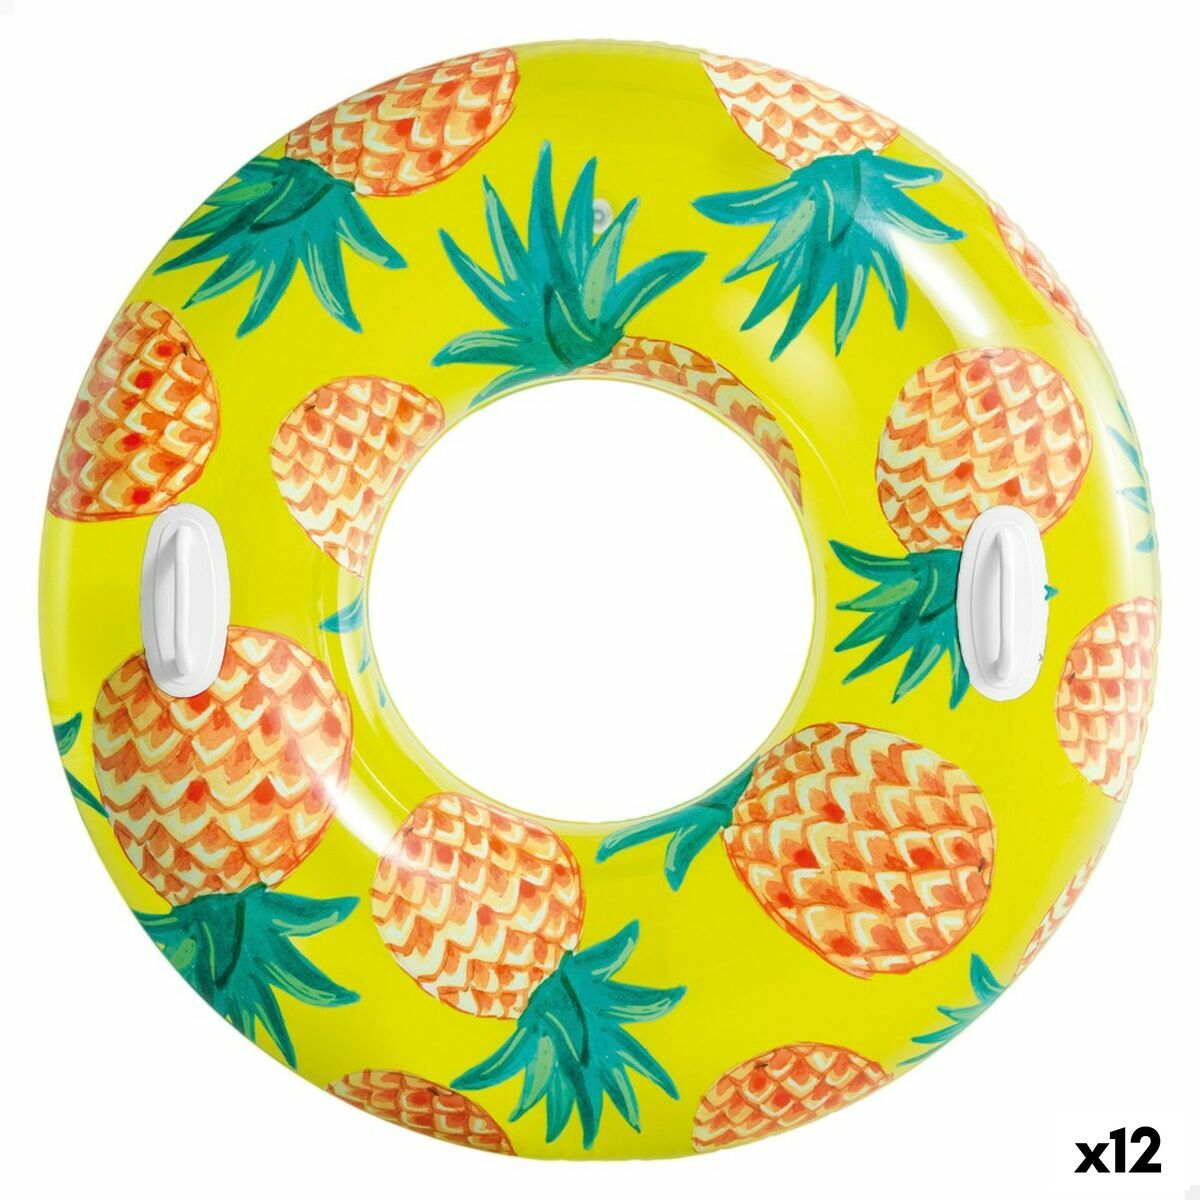 Salvagente Gonfiabile Donut Intex Tropical Fruits  107 cm (12 Unità) - Disponibile in 3-4 giorni lavorativi